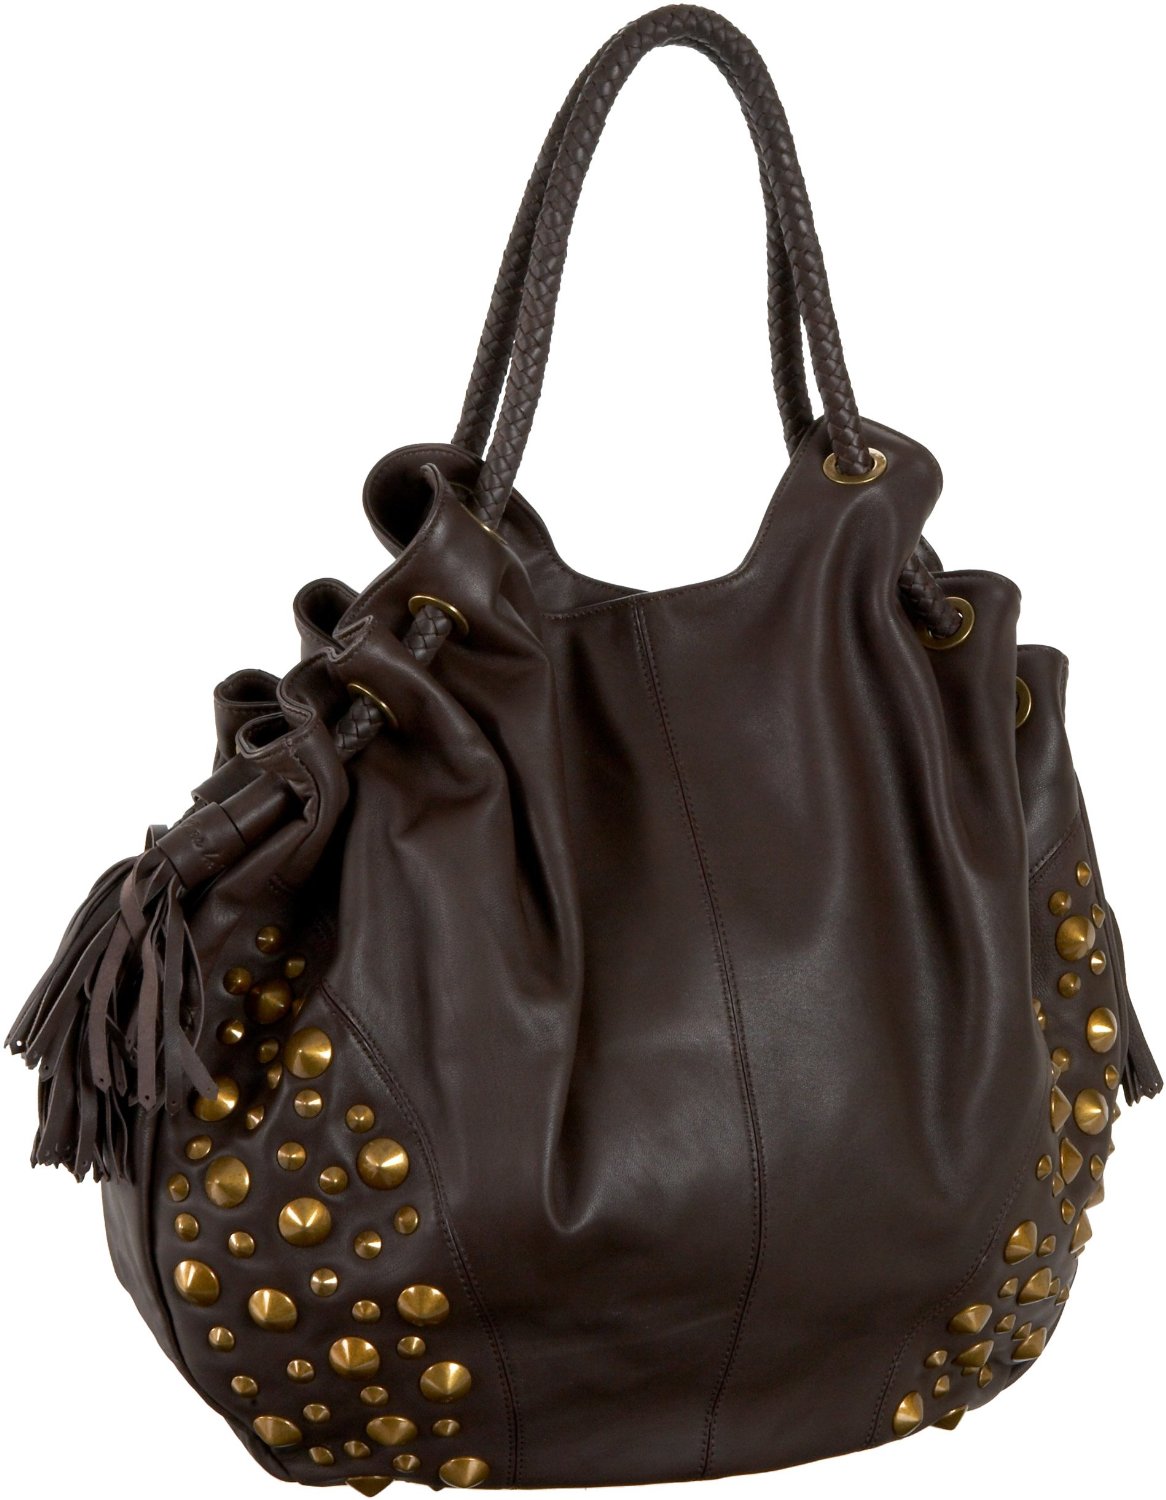 Hobo Leather handbags in US